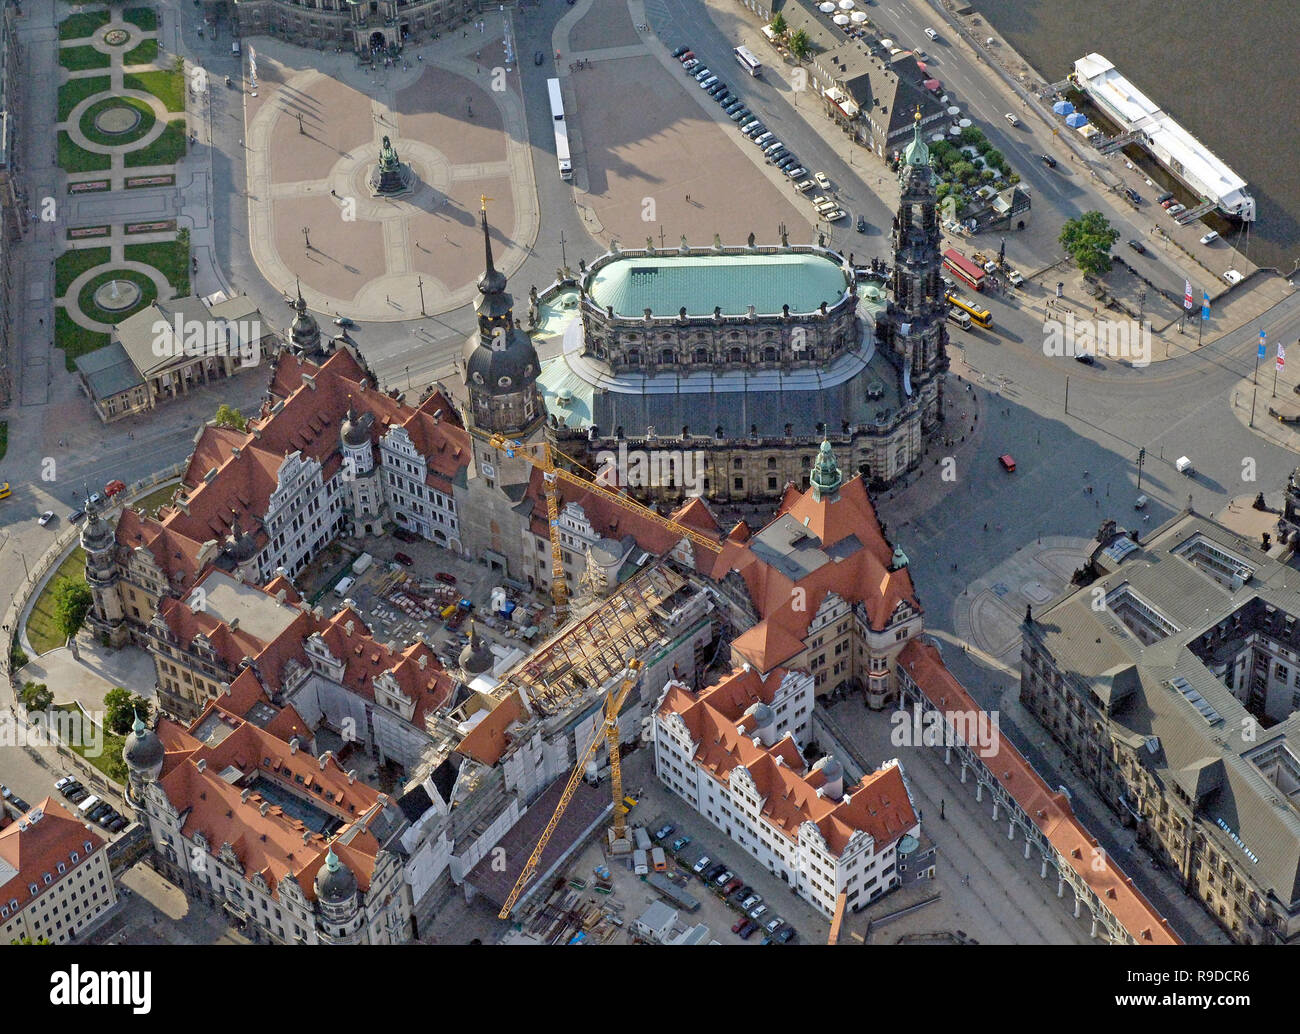 11.07.2006, Dresda, Sassonia, Germania - Luftbild von der Katholische Hofkirche und dem Dresdner Schloss am Elbufer Altstaedter. 0Ux060711D315CAROEX.jpg Foto Stock